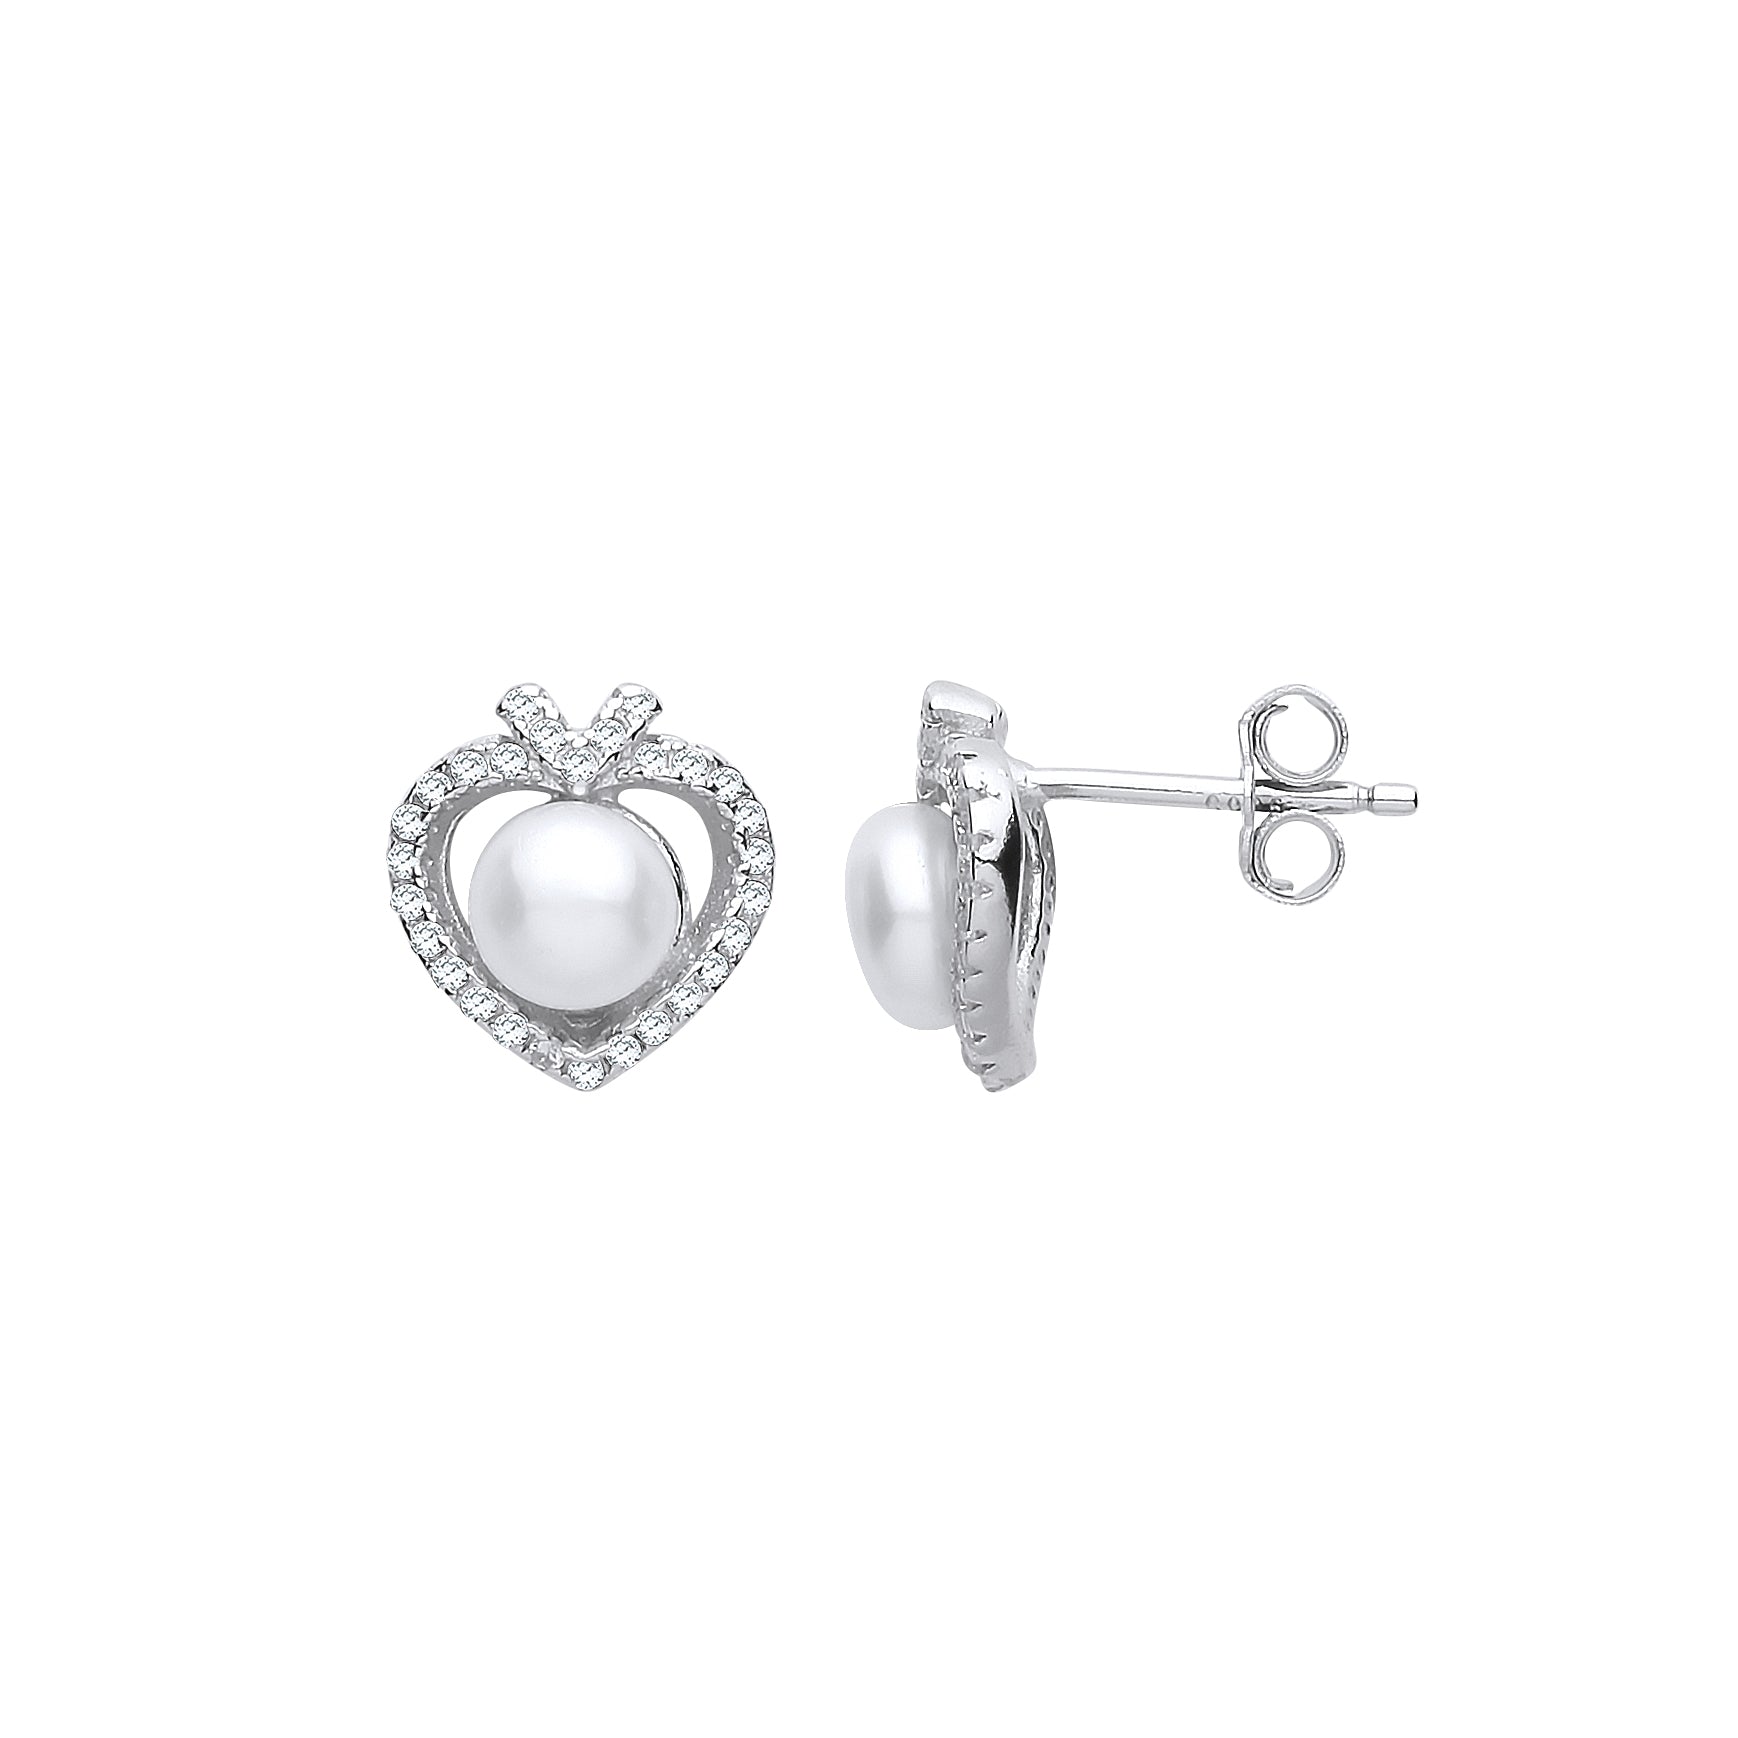 Silver  CZ Pearl Full Moon Love Heart Drop Earrings 5mm - GVE912